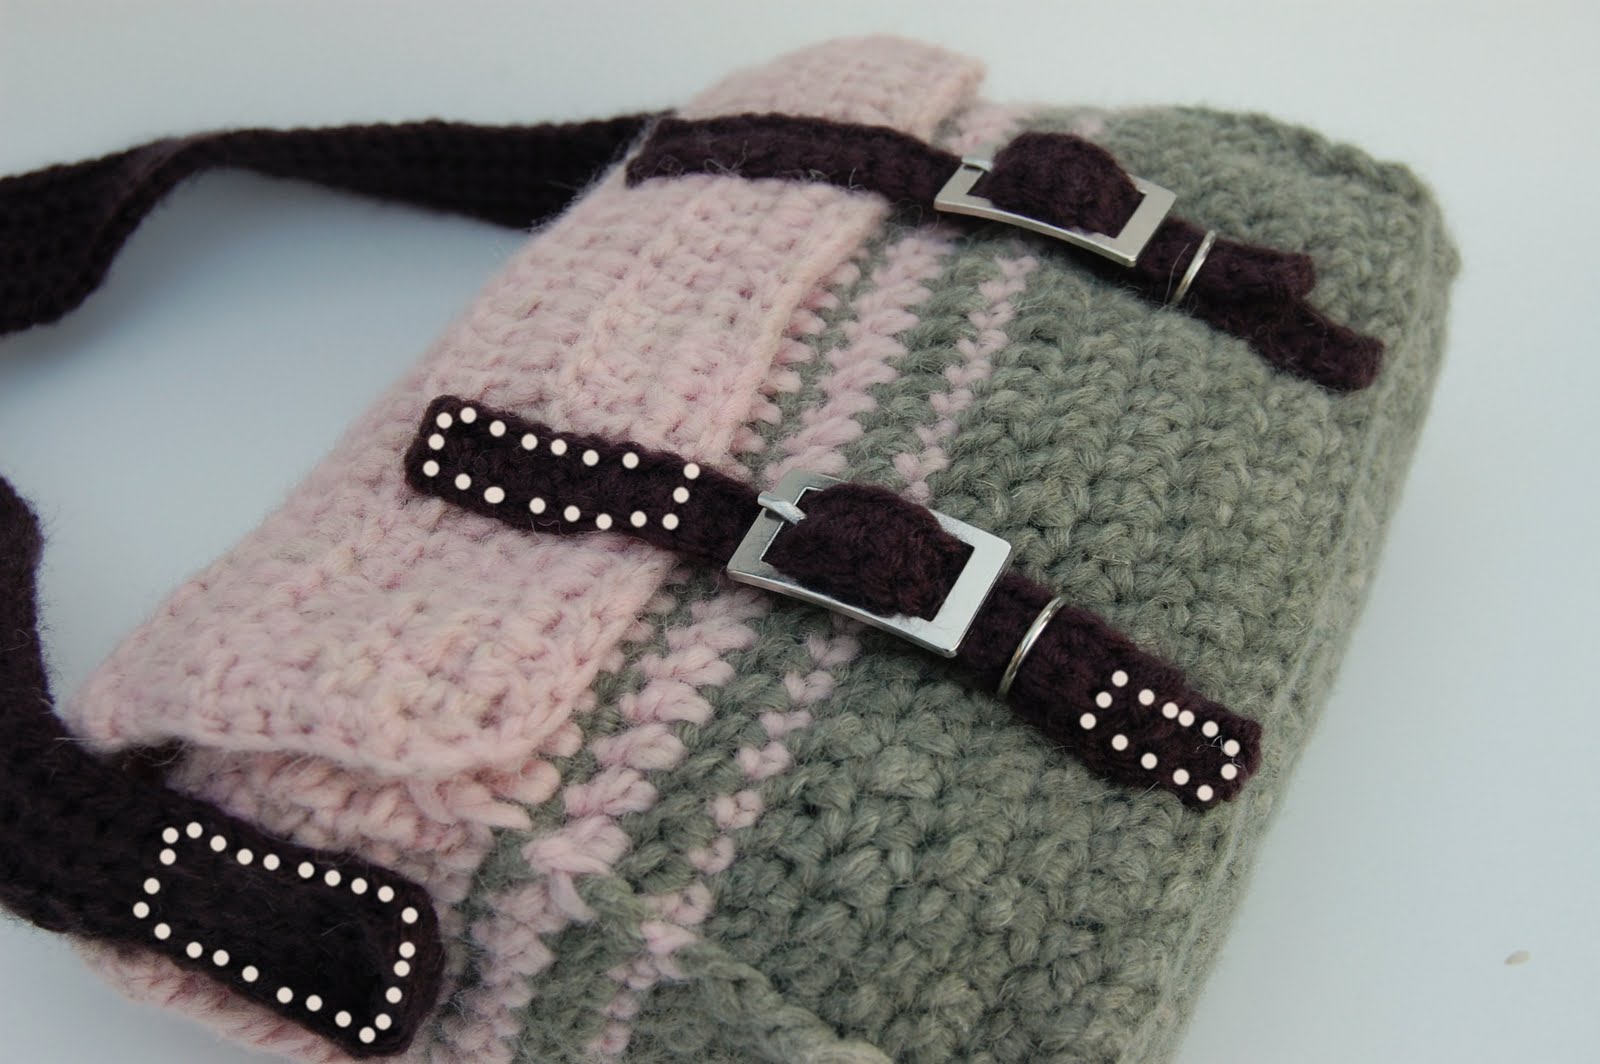 DIY Crochet Bag Tutorial